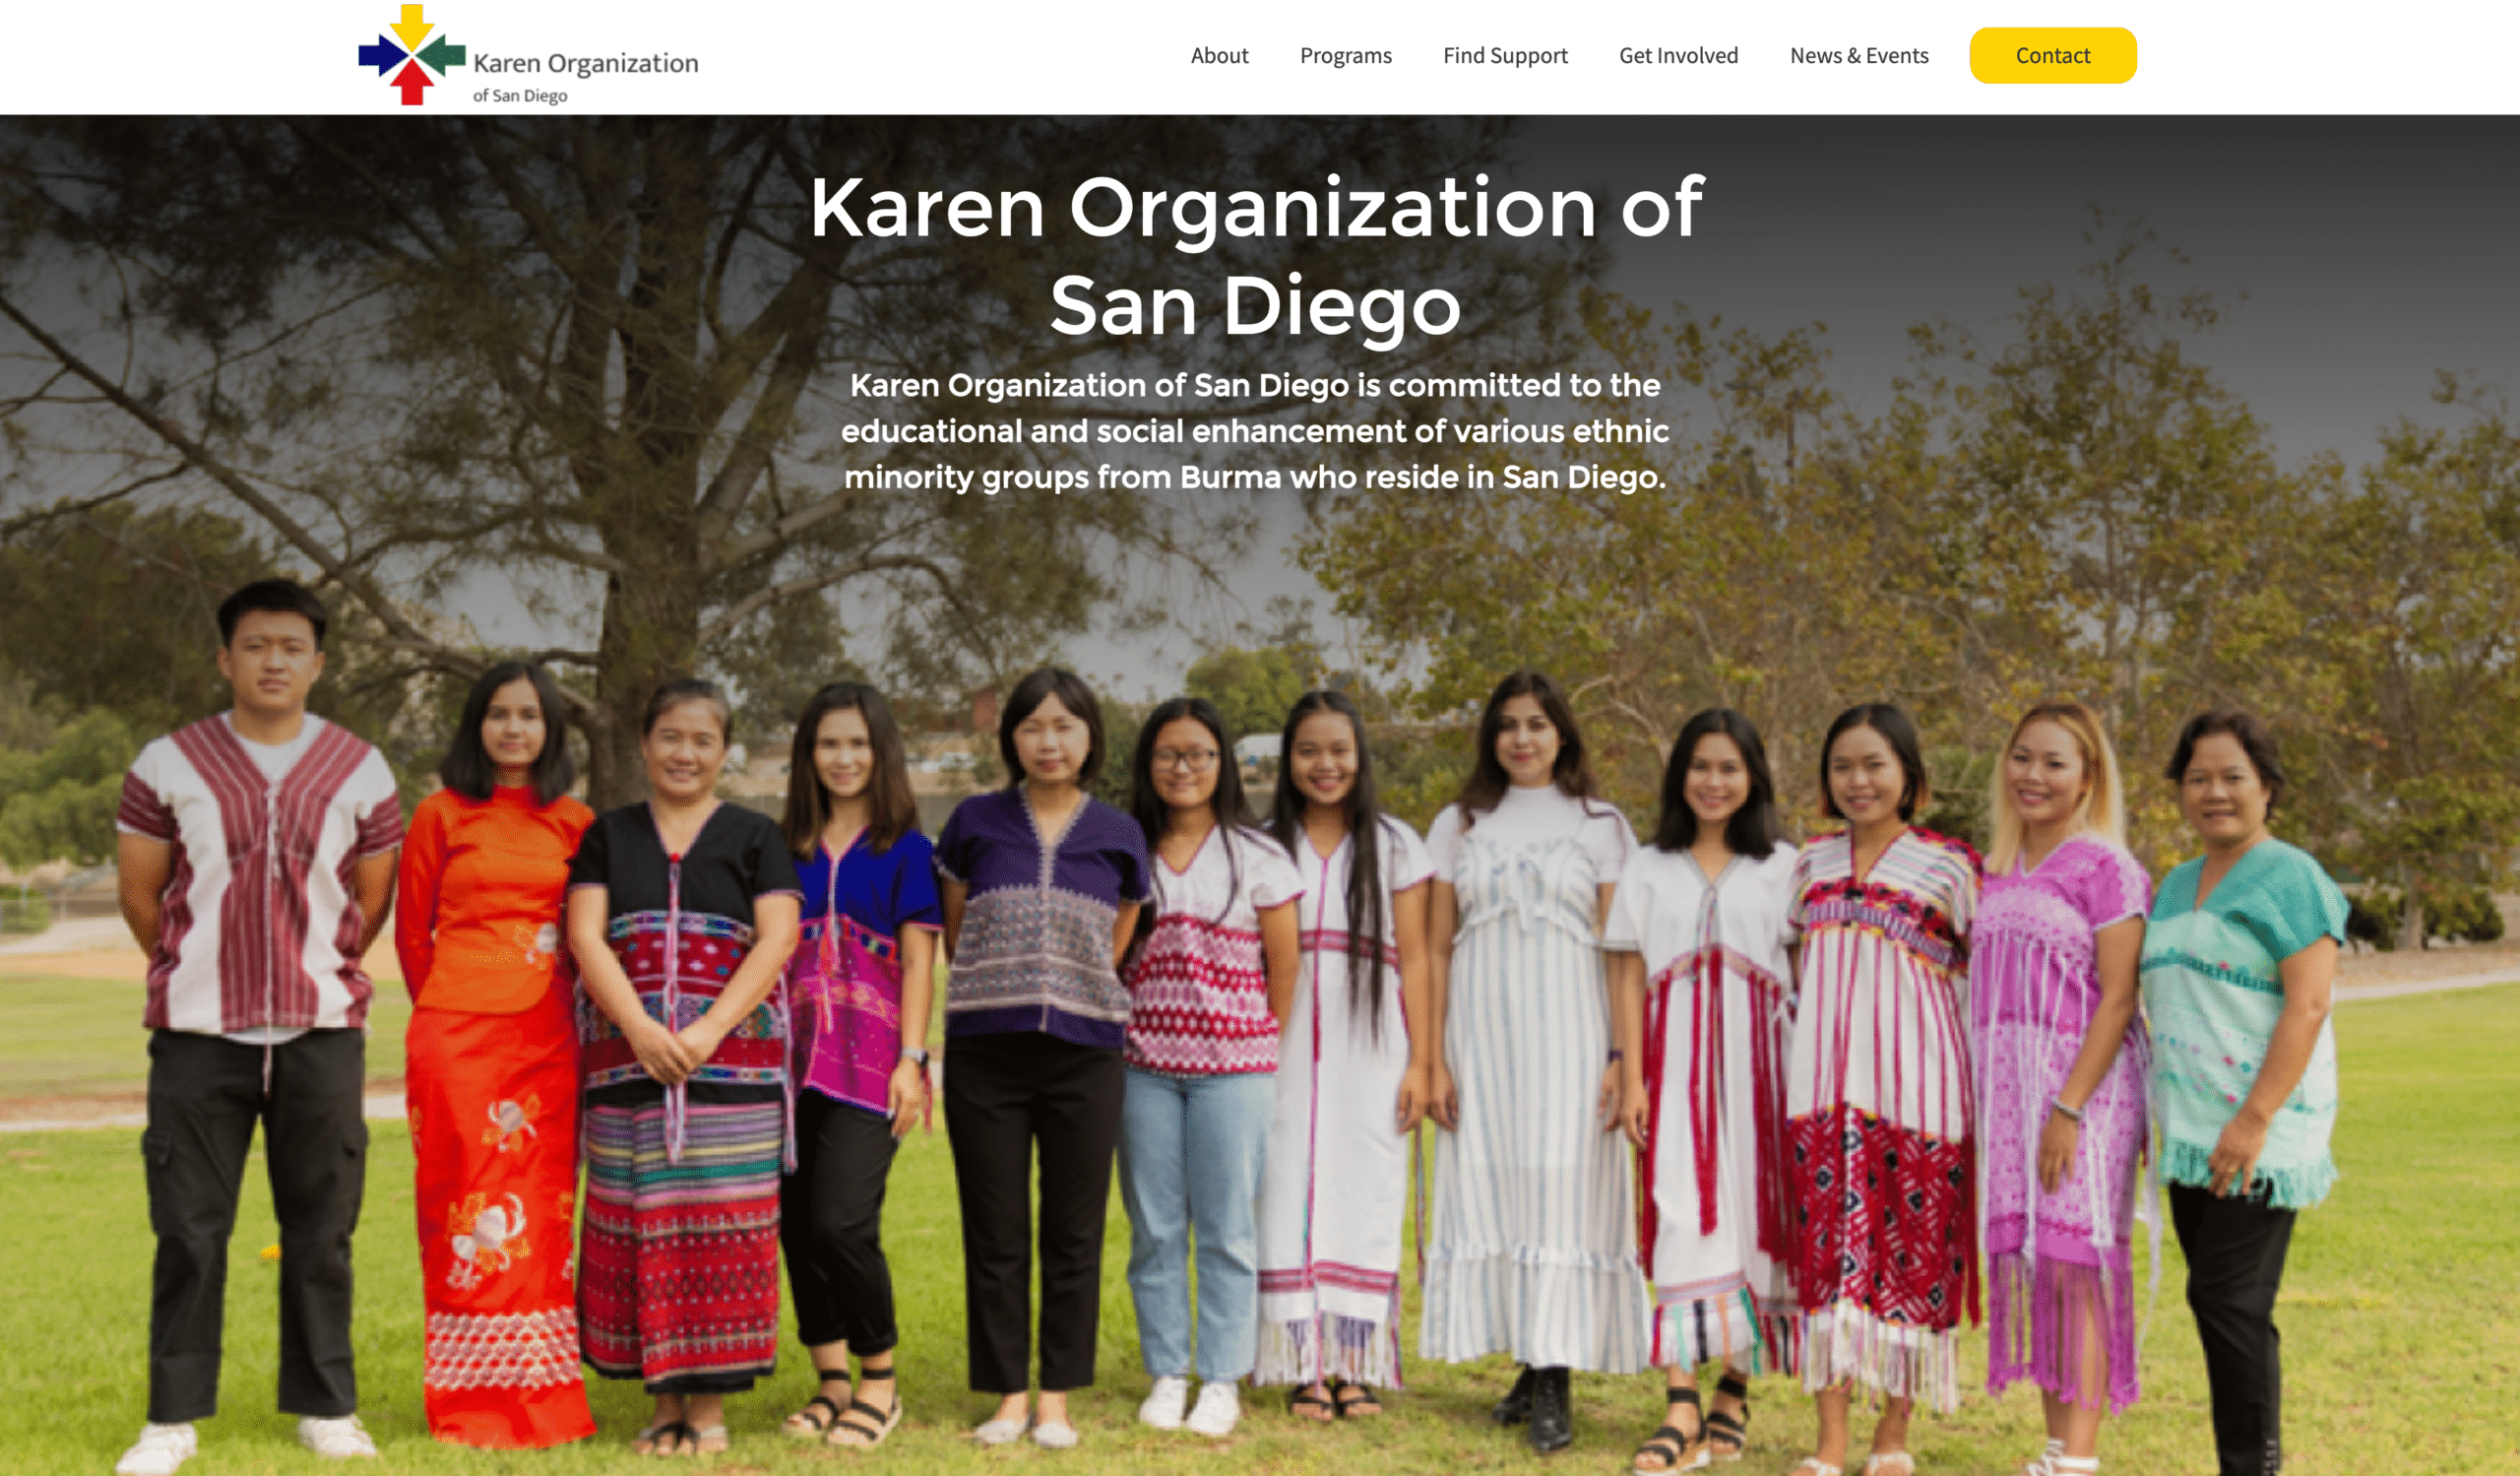 Karen Organization of San Diego website